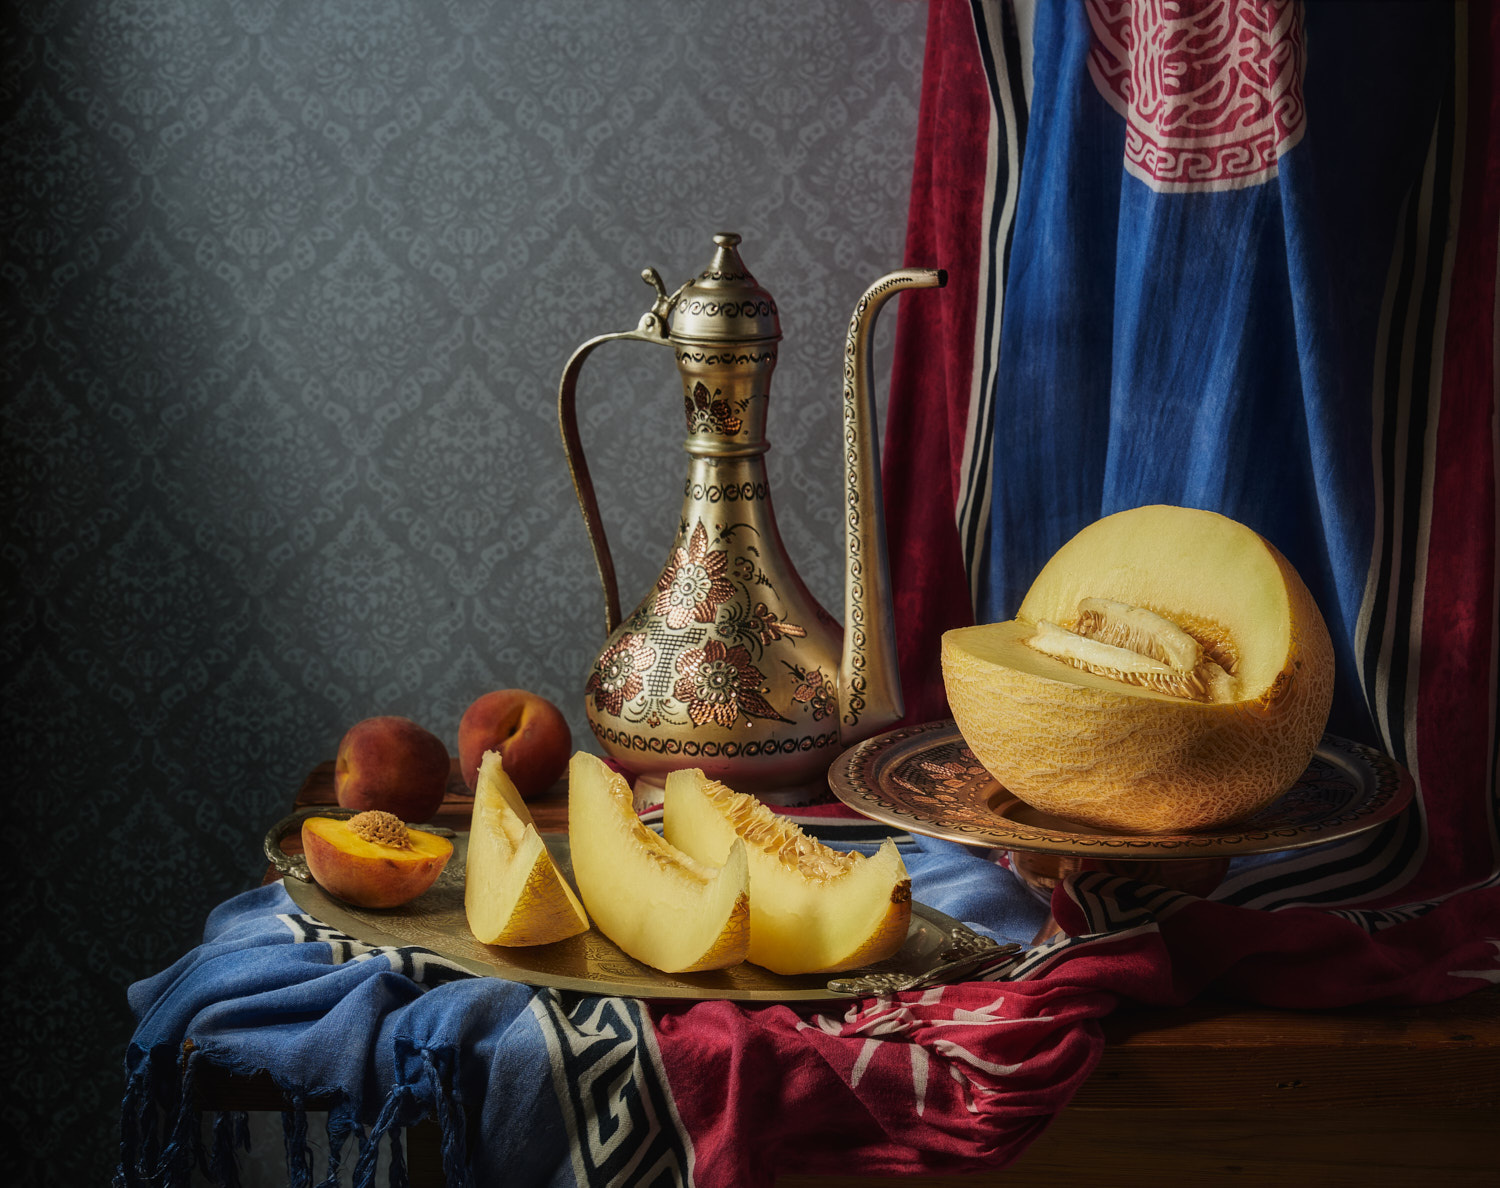 "Восточный" натюрморт - 2 натюрморт композиция постановка сцена плоды еда фрукты персики дыня кувшин